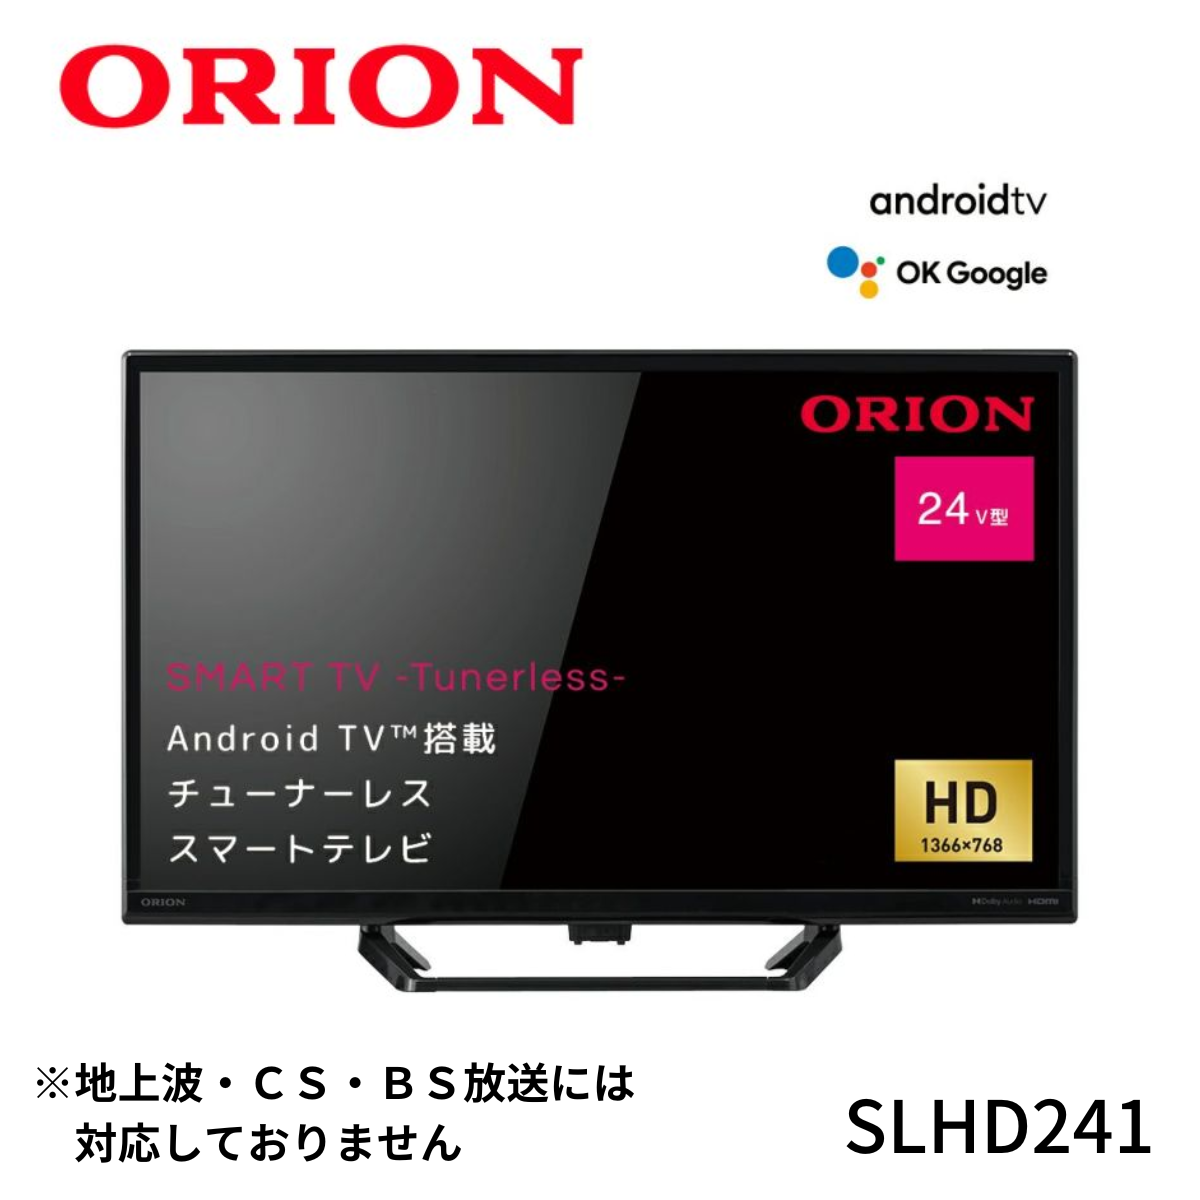 【ORION】AndroidTV™搭載 チューナーレス スマートテレビ 24v型